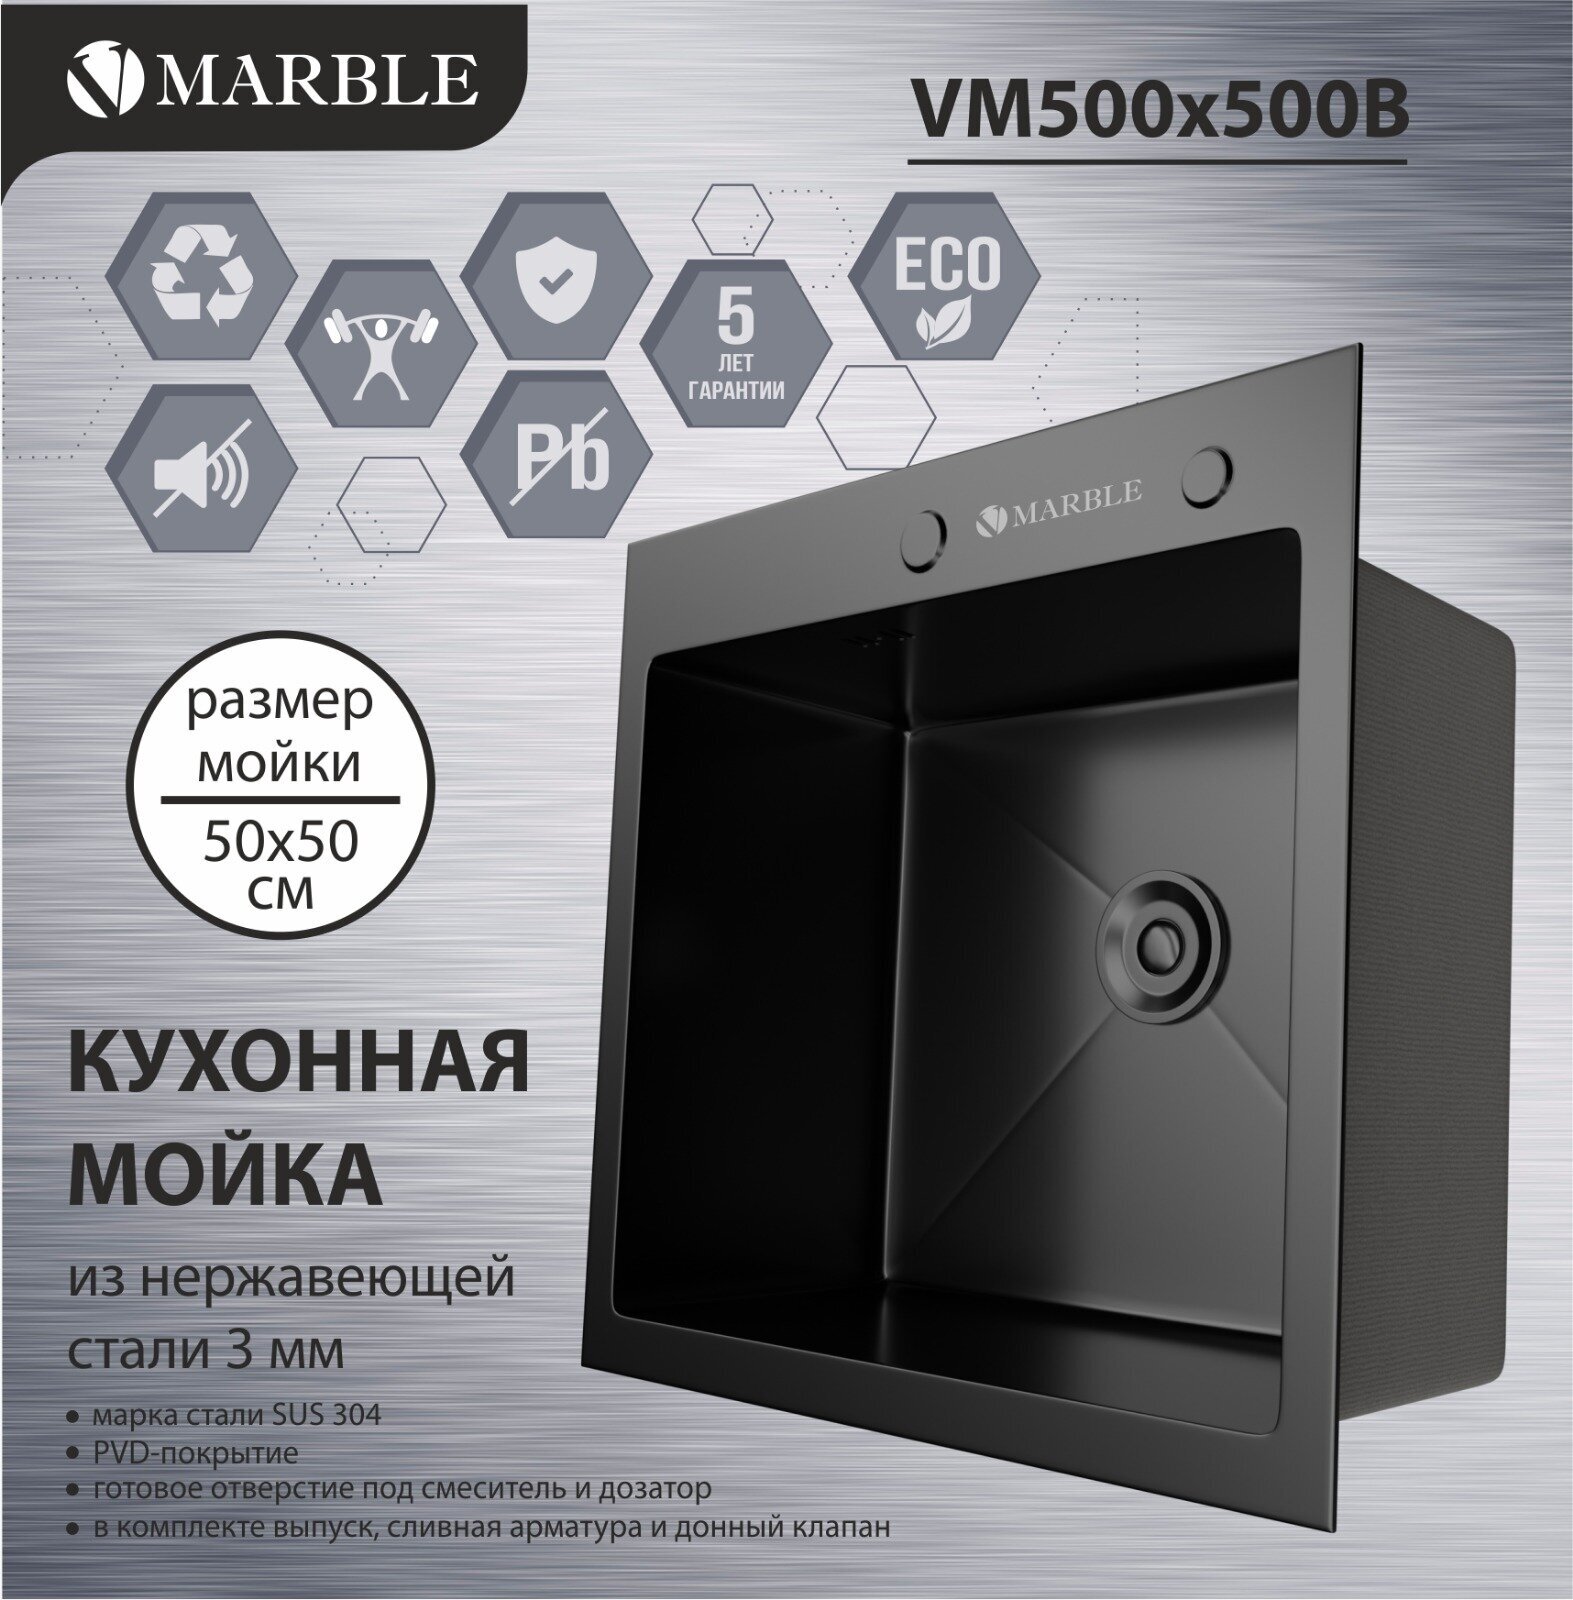 Кухонная мойка из нержавеющей стали Marble VM500*500B с PVD покрытием - фотография № 1